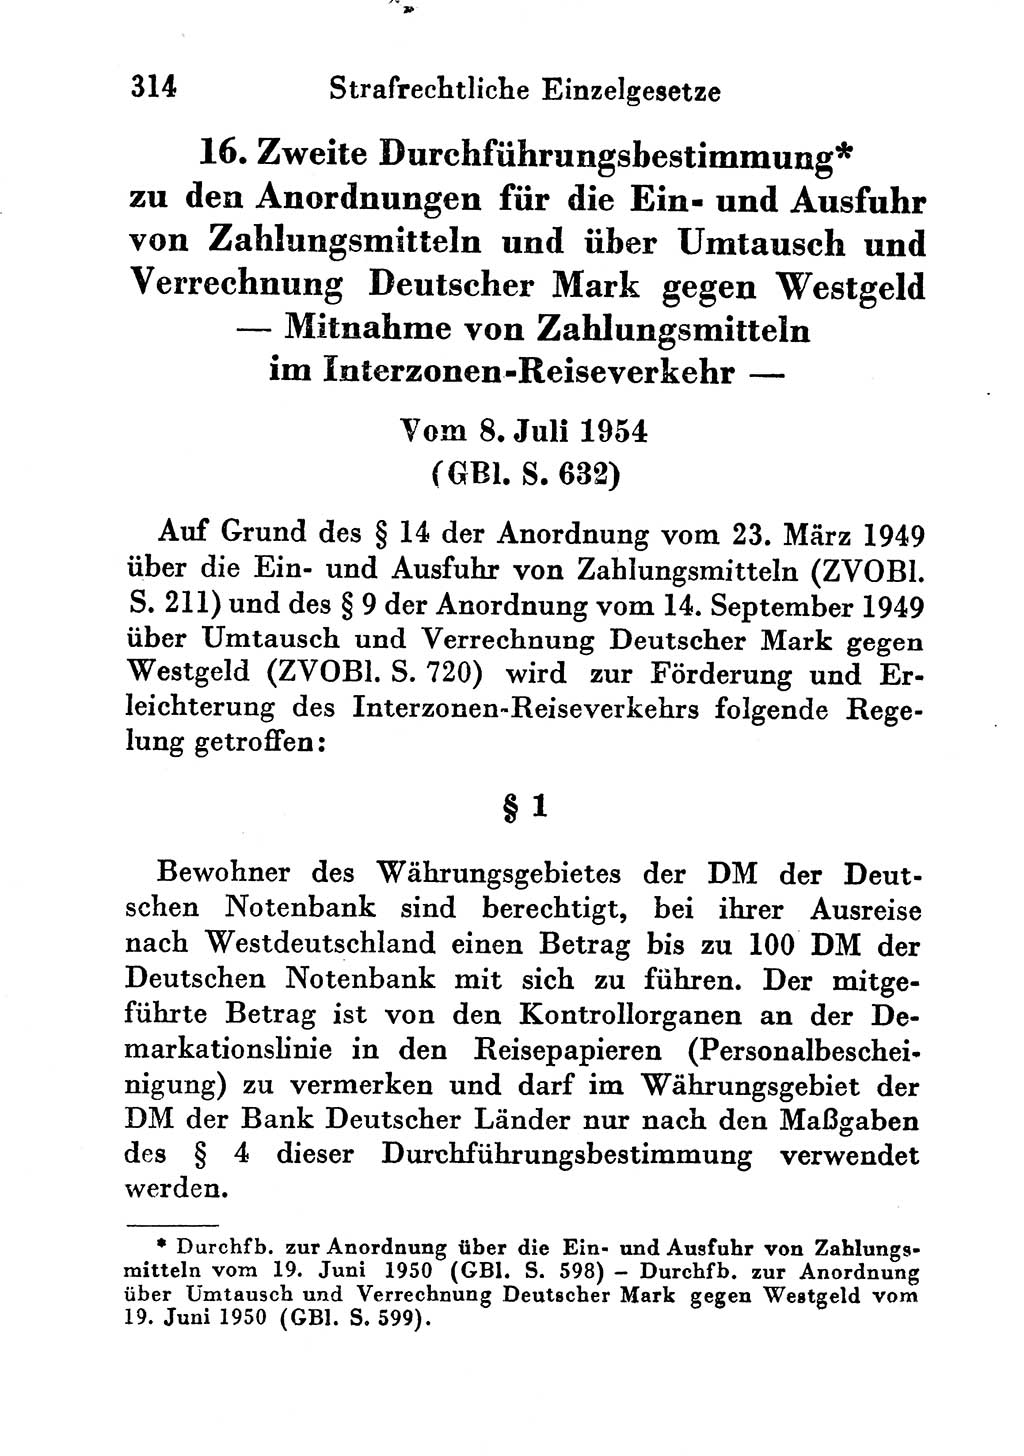 Strafgesetzbuch (StGB) und andere Strafgesetze [Deutsche Demokratische Republik (DDR)] 1956, Seite 314 (StGB Strafges. DDR 1956, S. 314)